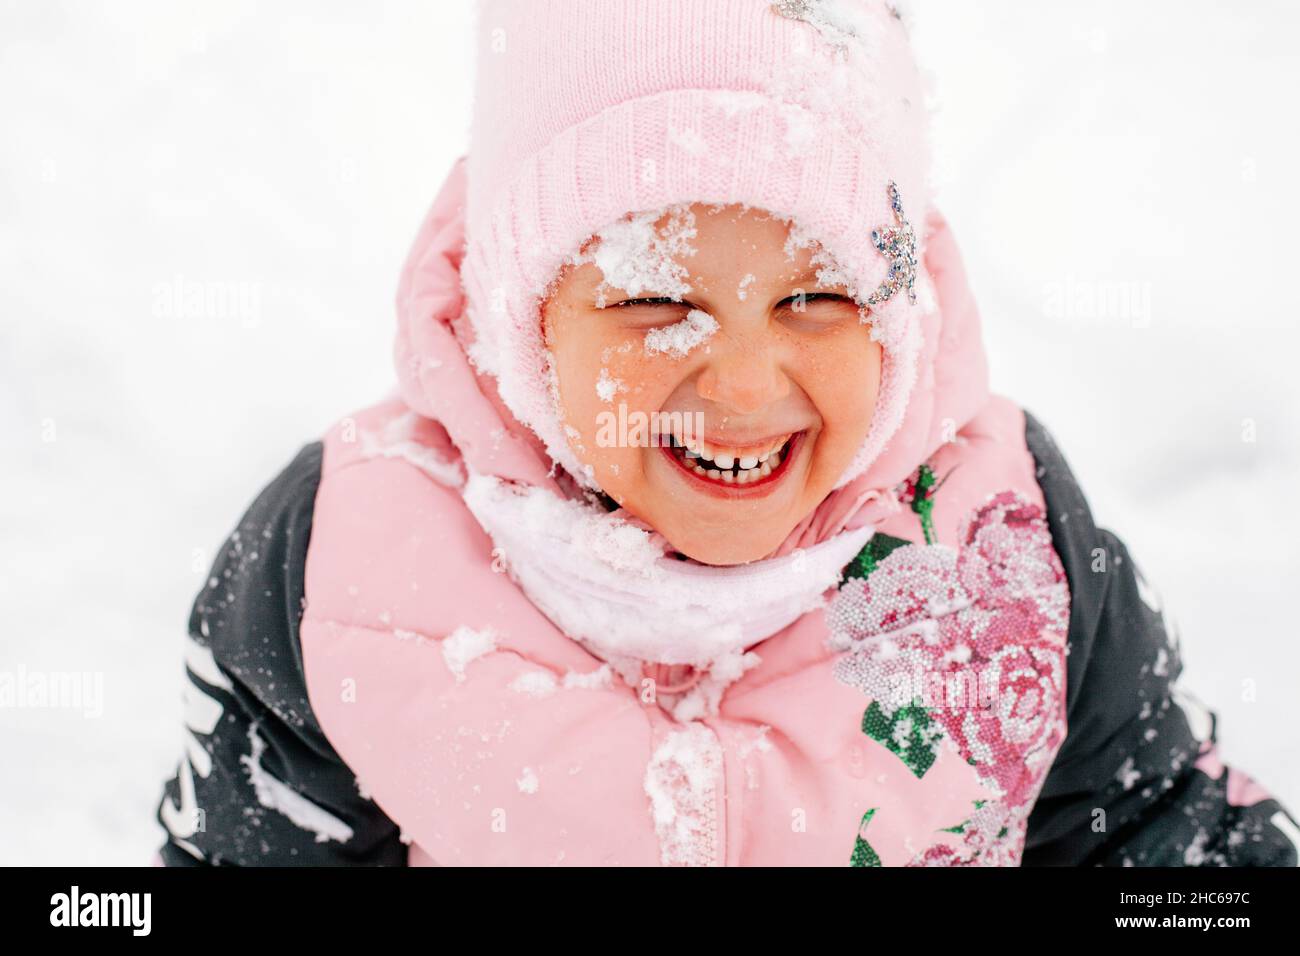 Primo piano bambino sorridente con i denti con il viso coperto di neve indossando abiti rosa inverno nel parco. Sfondo sorprendente pieno di bianco e neve Foto Stock